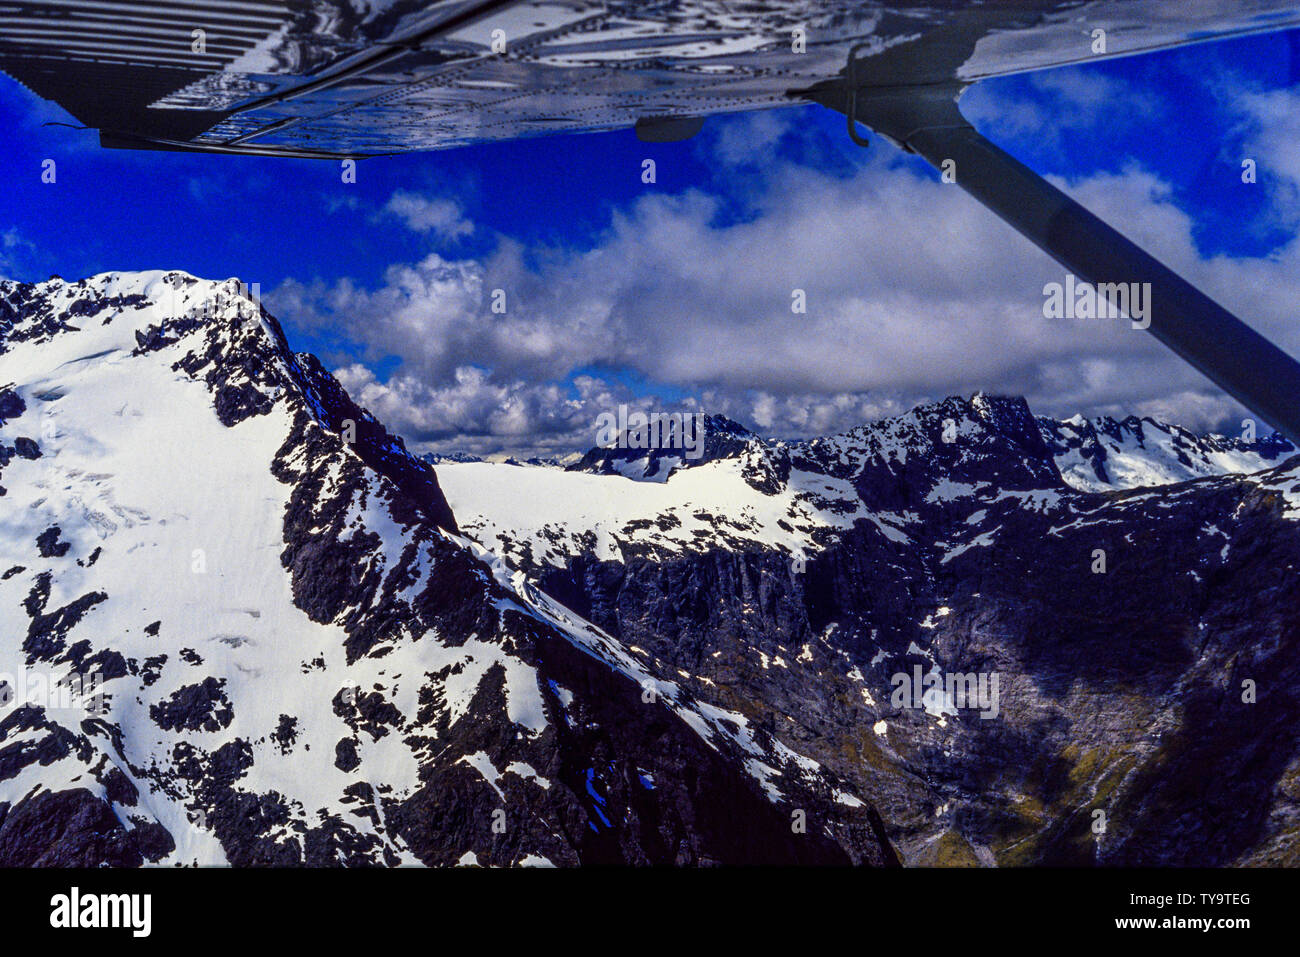 Nuova Zelanda, Isola del Sud. Volare sopra le Alpi del Sud / Kā Tiritiri o te Moana, una catena montuosa che si estende lungo buona parte della lunghezza della Nuova Zelanda " Foto Stock